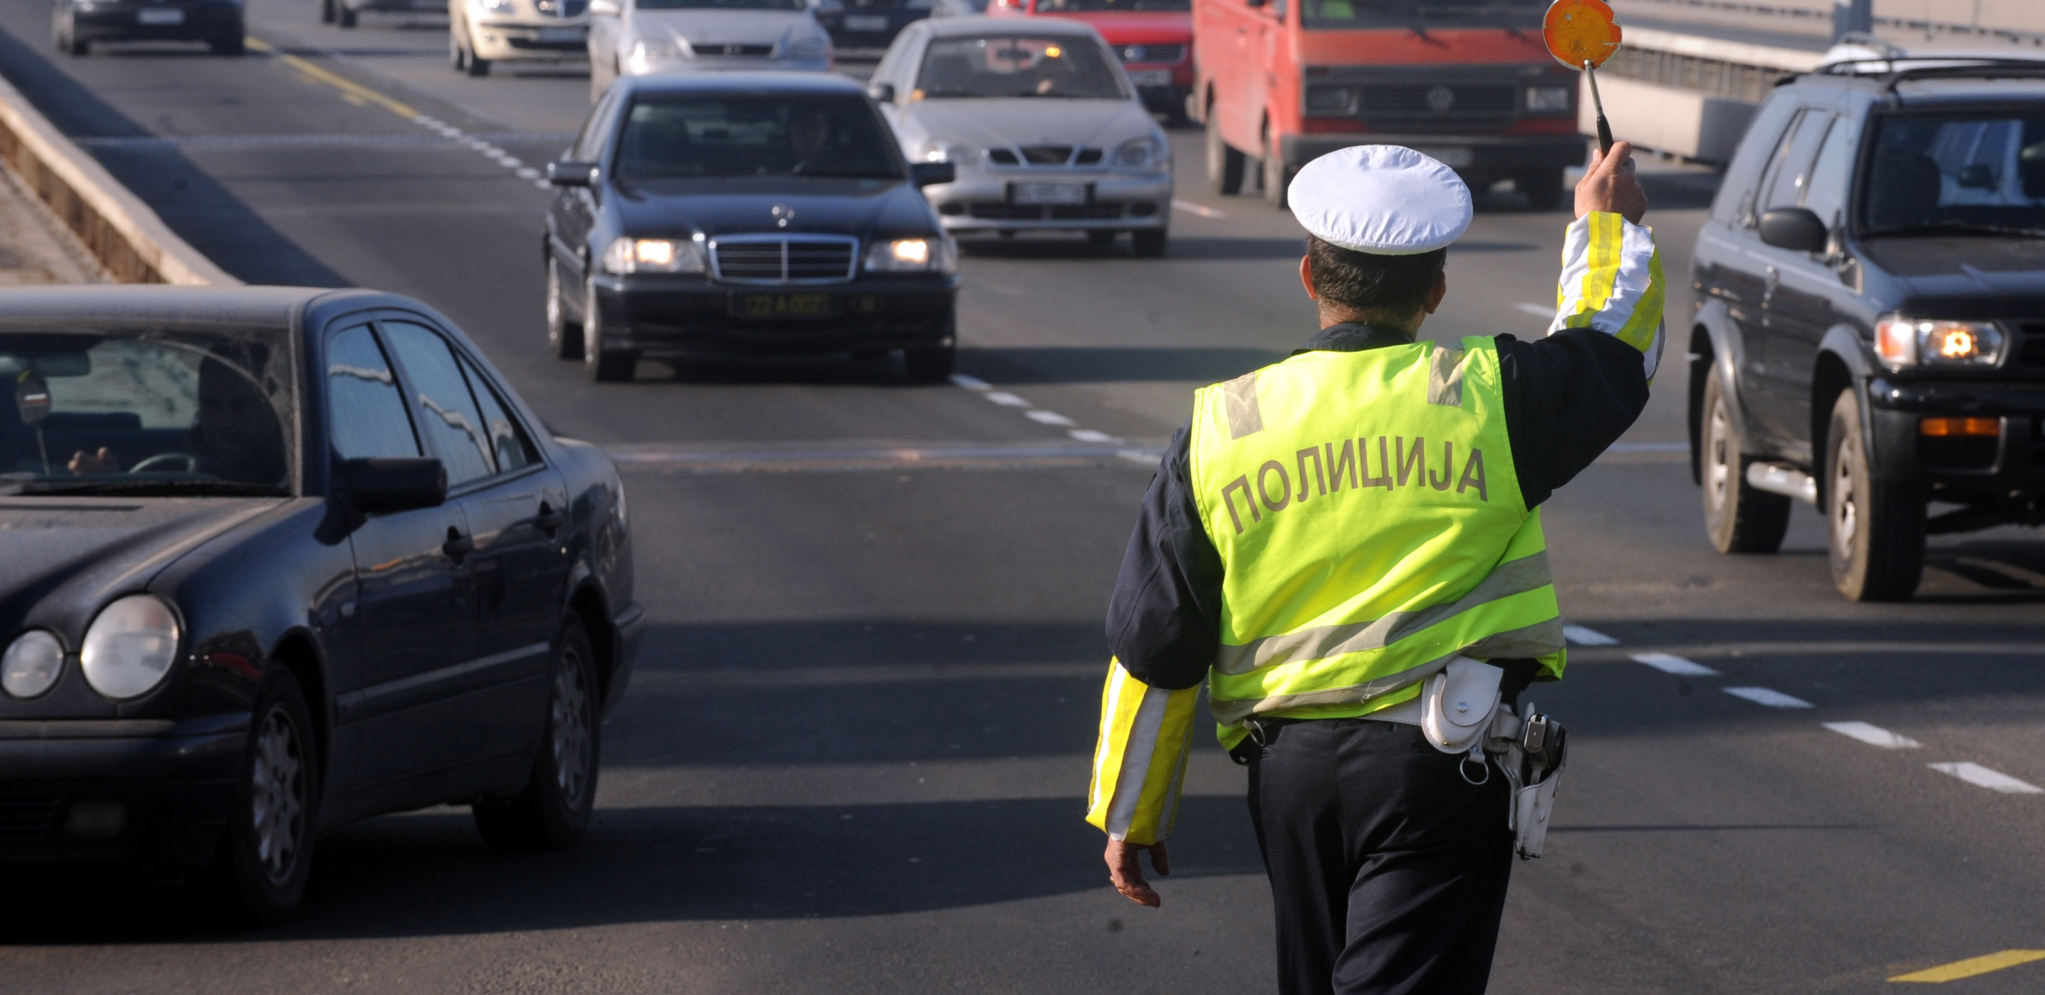 ŠTA JE SA LJUDIMA? Beograđanin za 8 minuta napravio 12 saobraćajnih prekršaja!